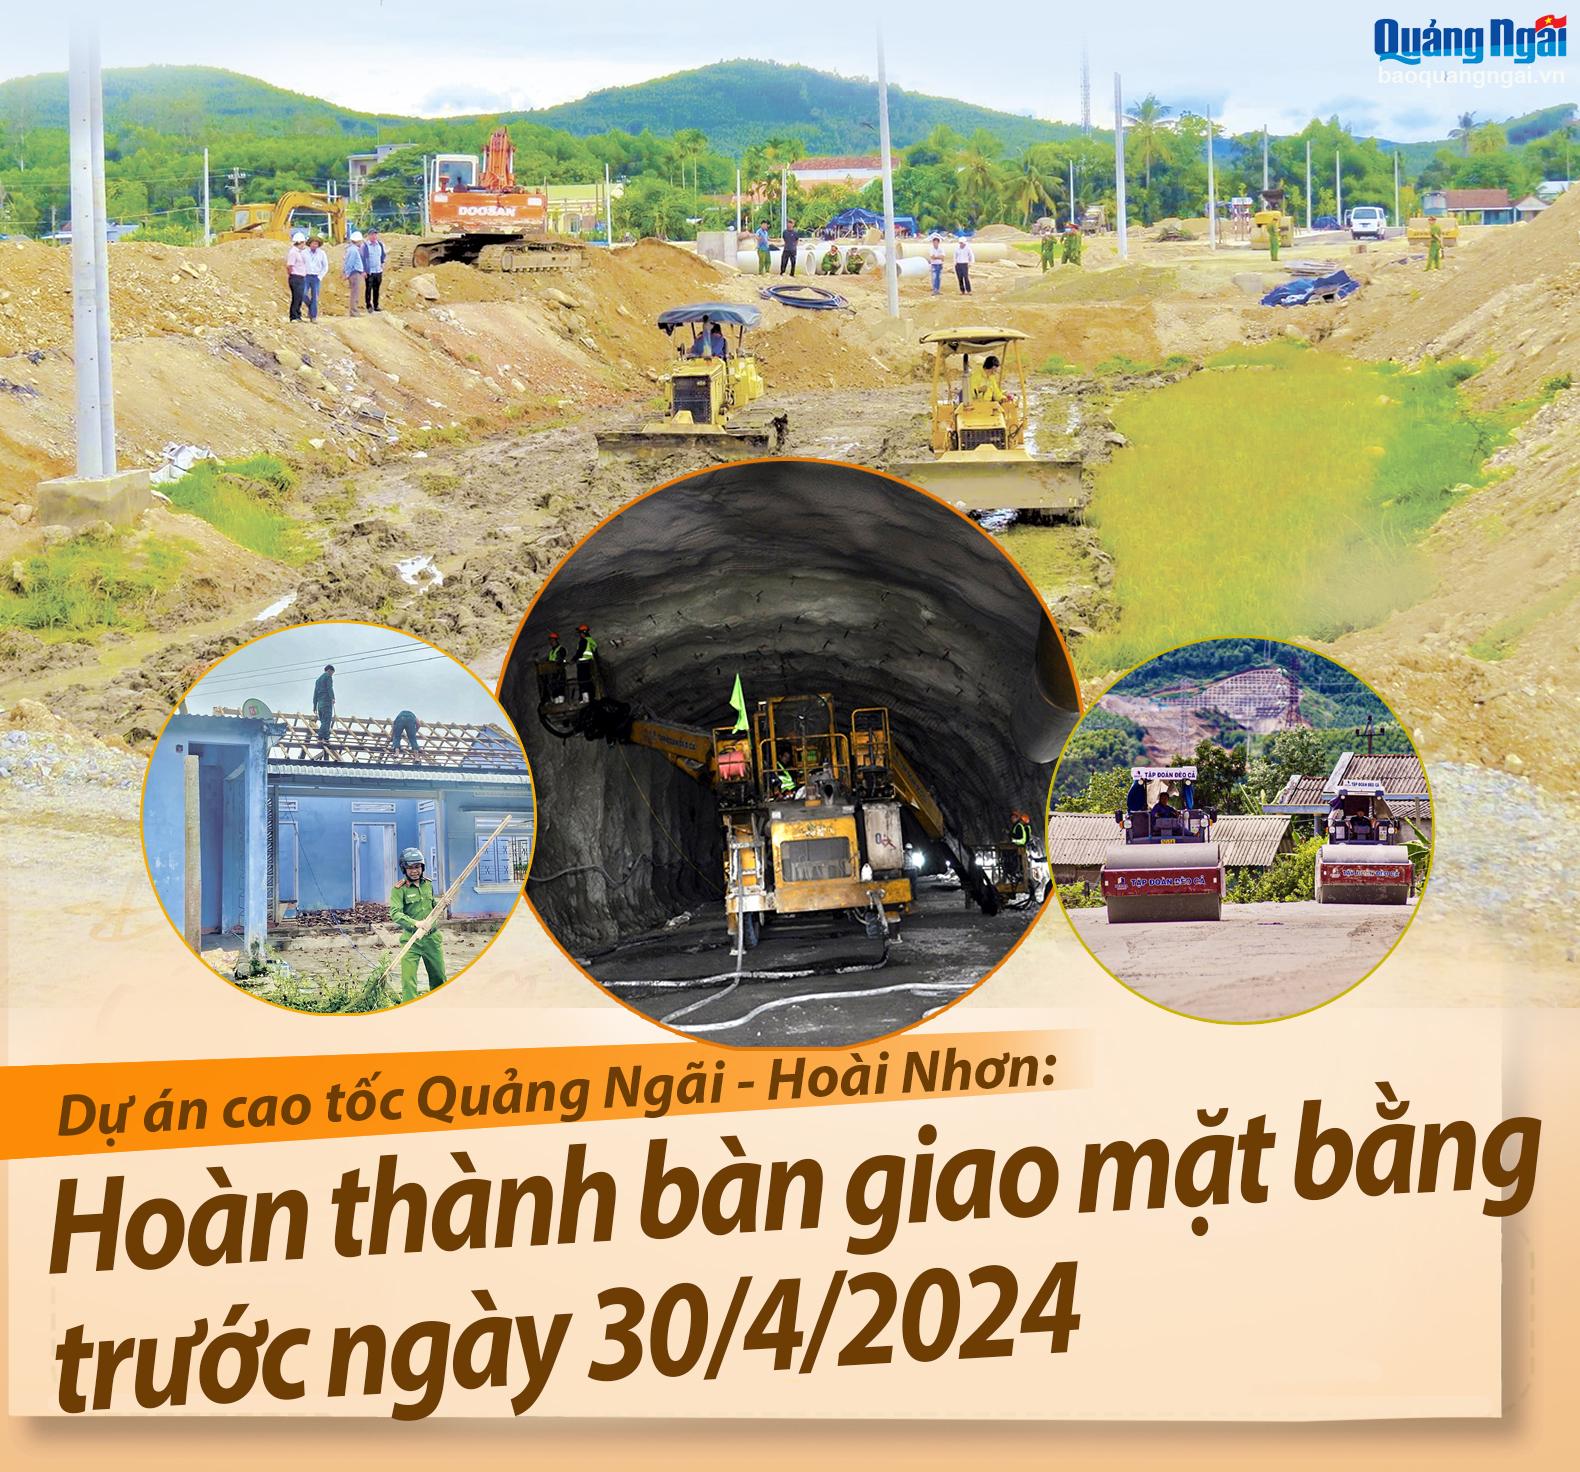 Dự án cao tốc Quảng Ngãi - Hoài Nhơn: Hoàn thành bàn giao mặt bằng trước ngày 30/4/2024